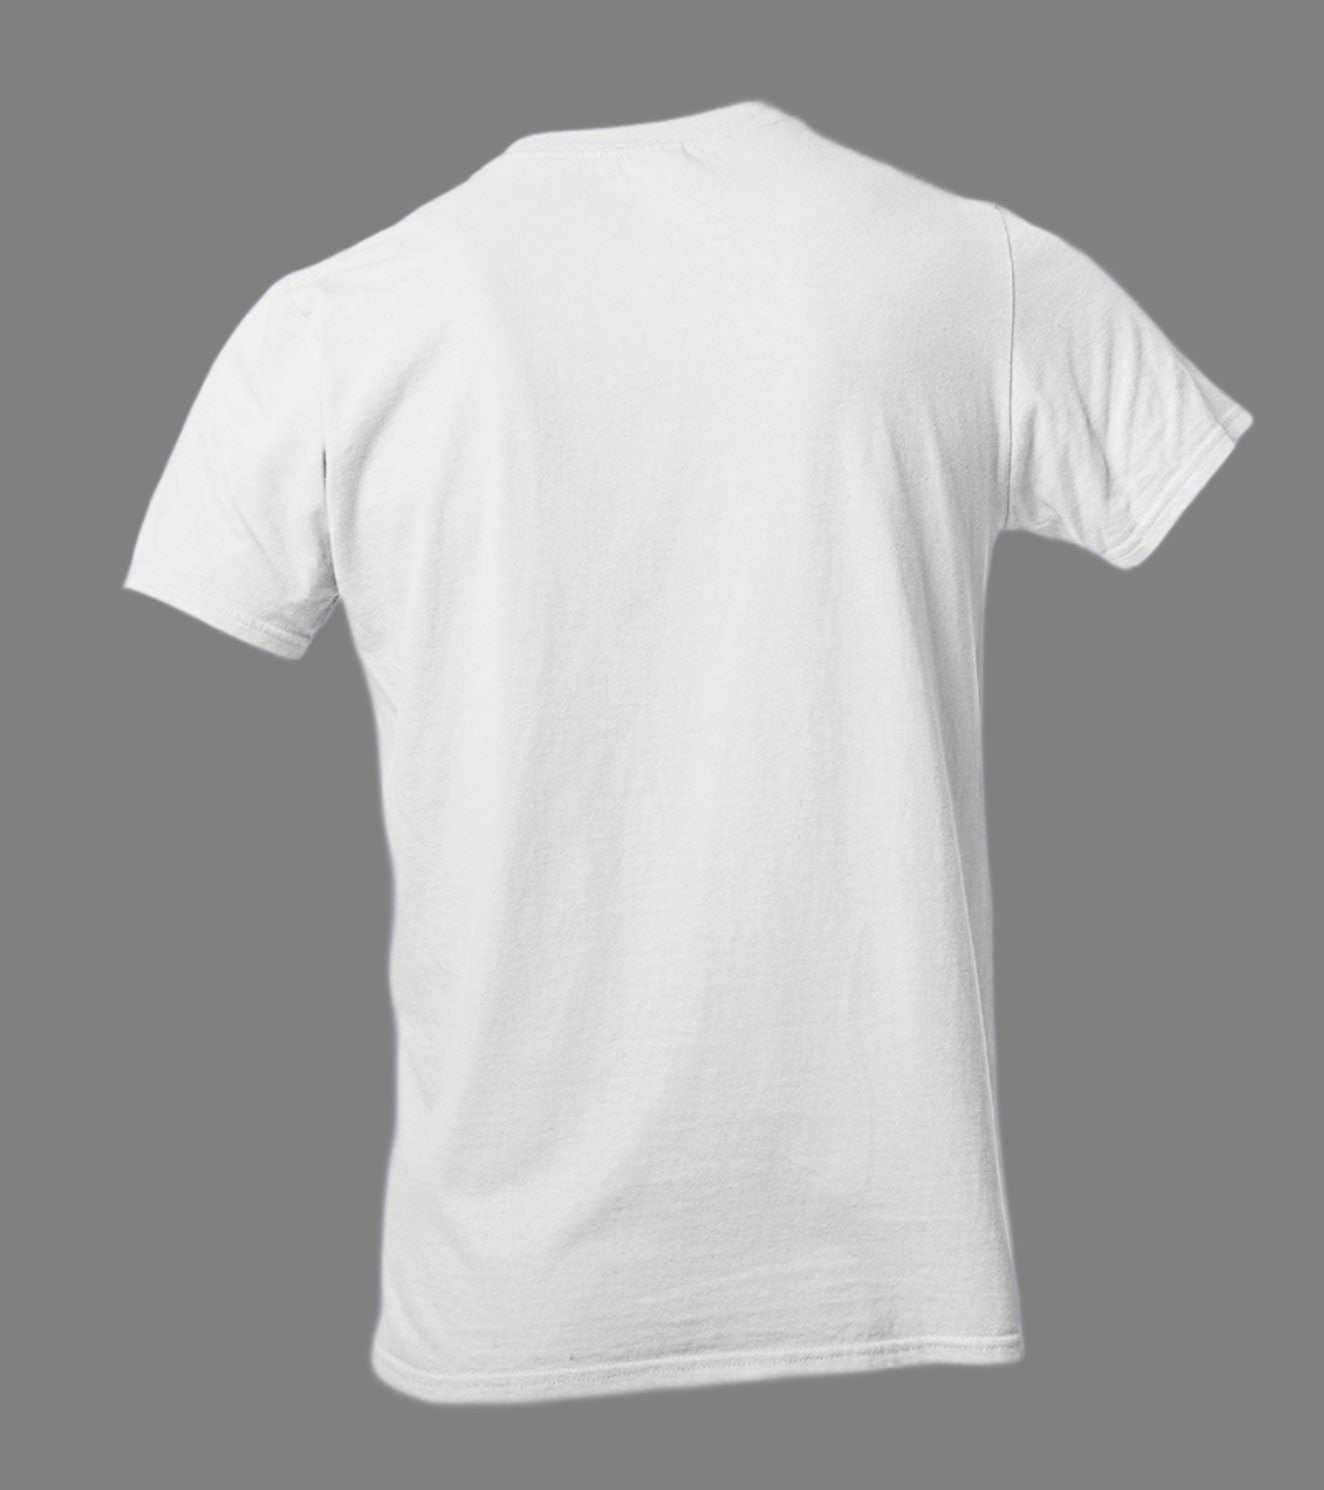 Men's "he dared" T-Shirt(White) - wodarmour